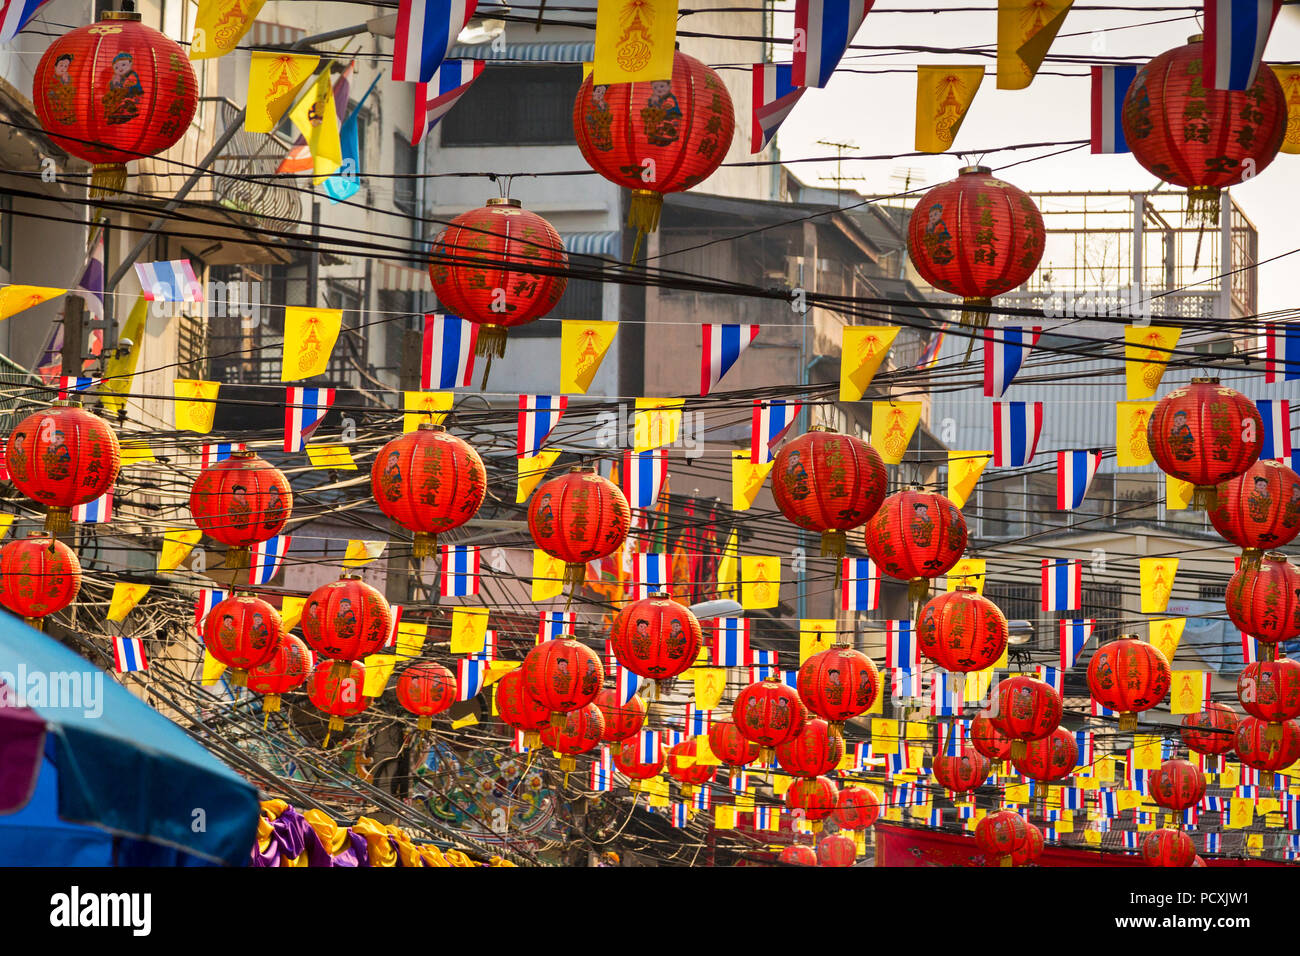 Les lanternes du Nouvel An chinois dans le quartier chinois, Yaowarat, Bangkok, Thaïlande Banque D'Images